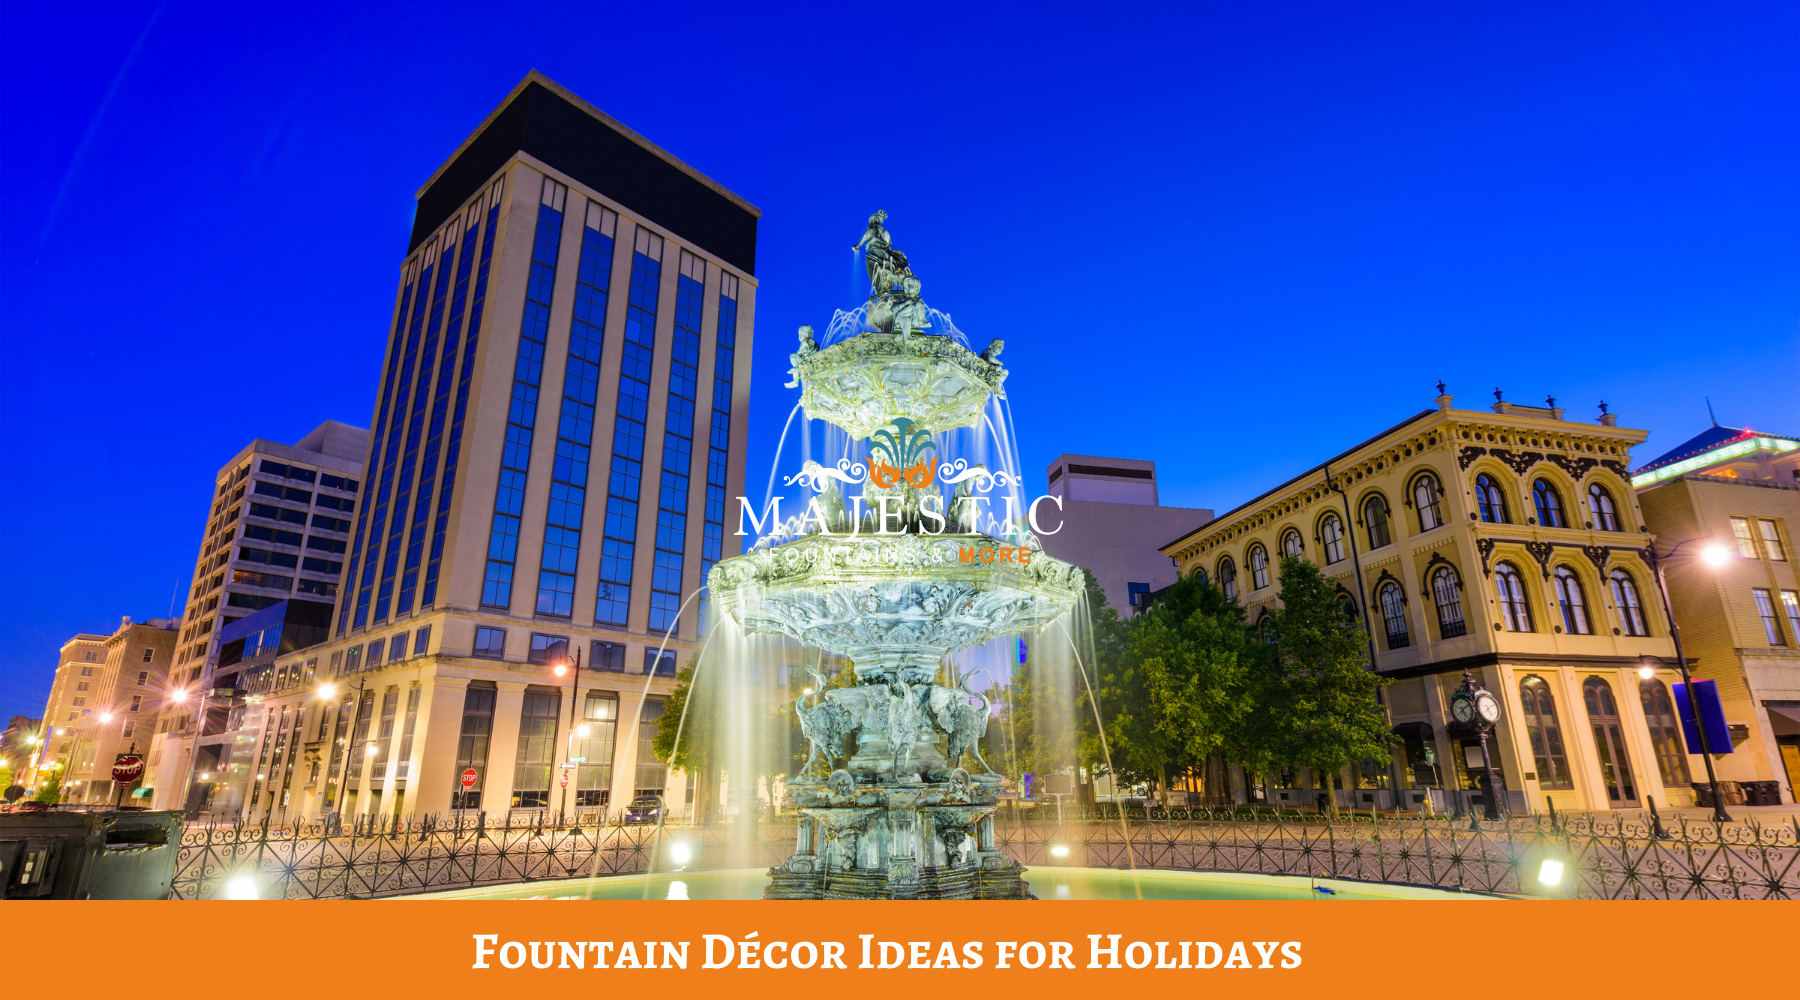 Fountain Décor Ideas for Holidays